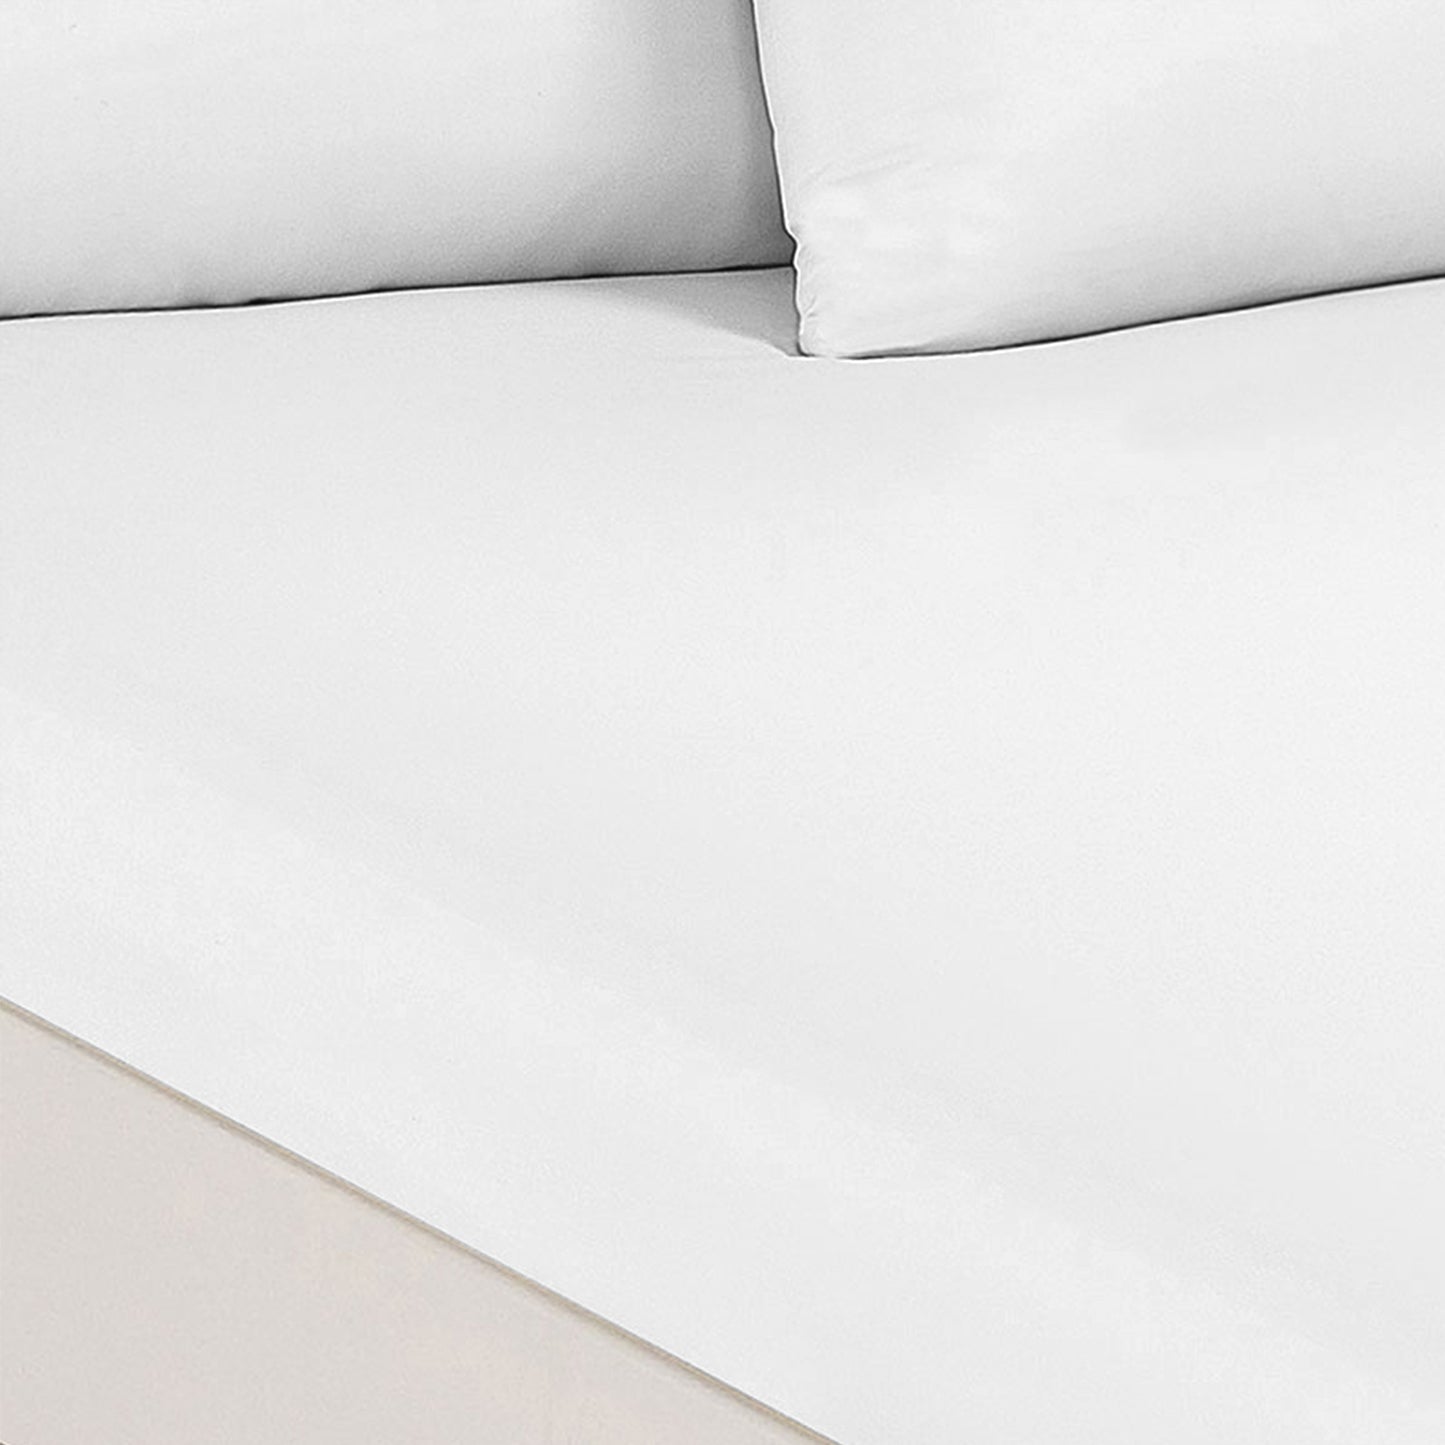 KING 1500TC 3-Piece Cotton Rich Sheet Set Ultra Soft Bedding - White